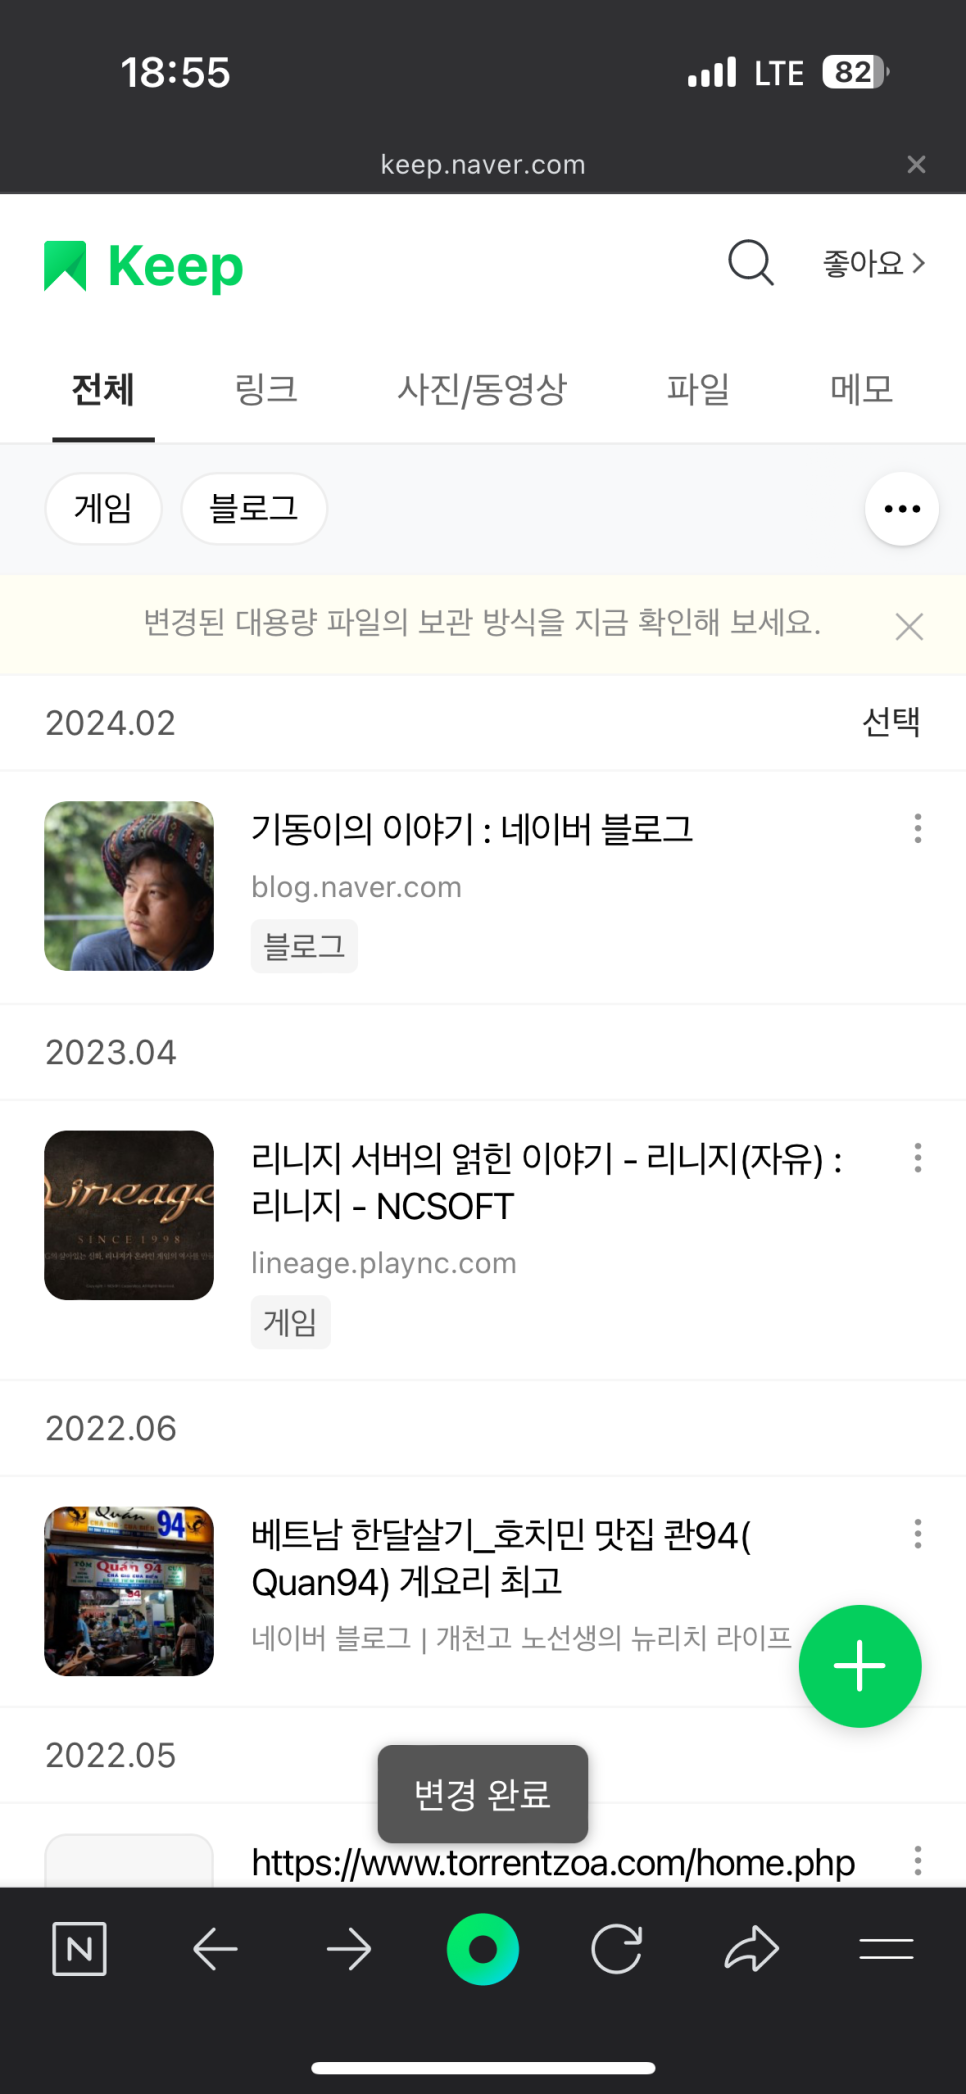 네이버킵 네이버keep 활용법 북마크 즐겨찾기 링크 파일 컬렉션